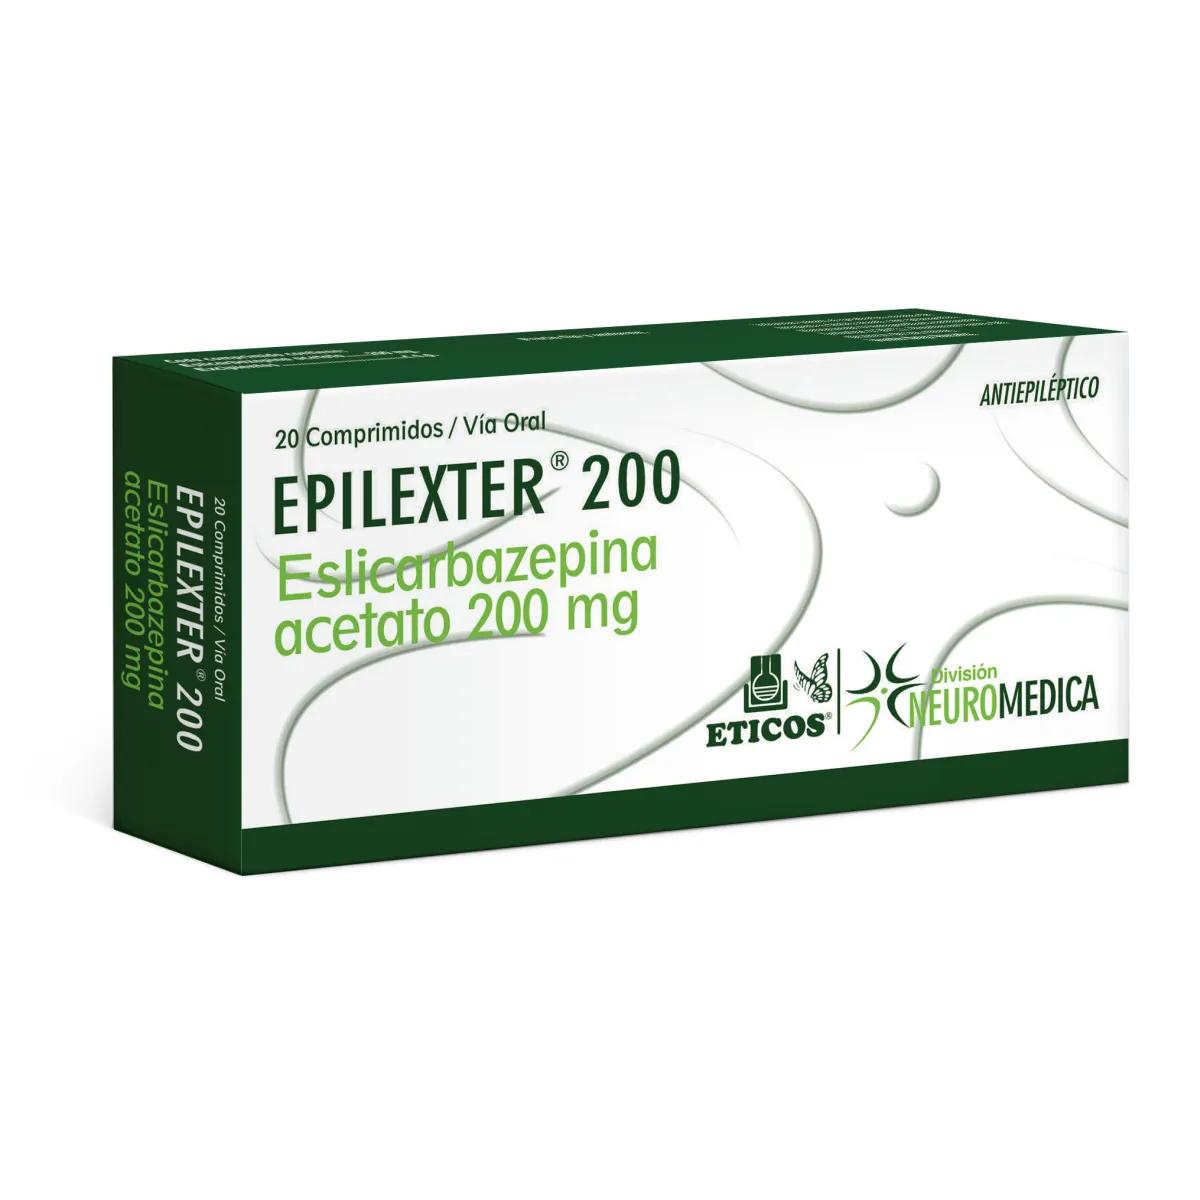 Epilexter Eslicarbazepina Acetato 200 mg - Cont. 30 Comprimidos